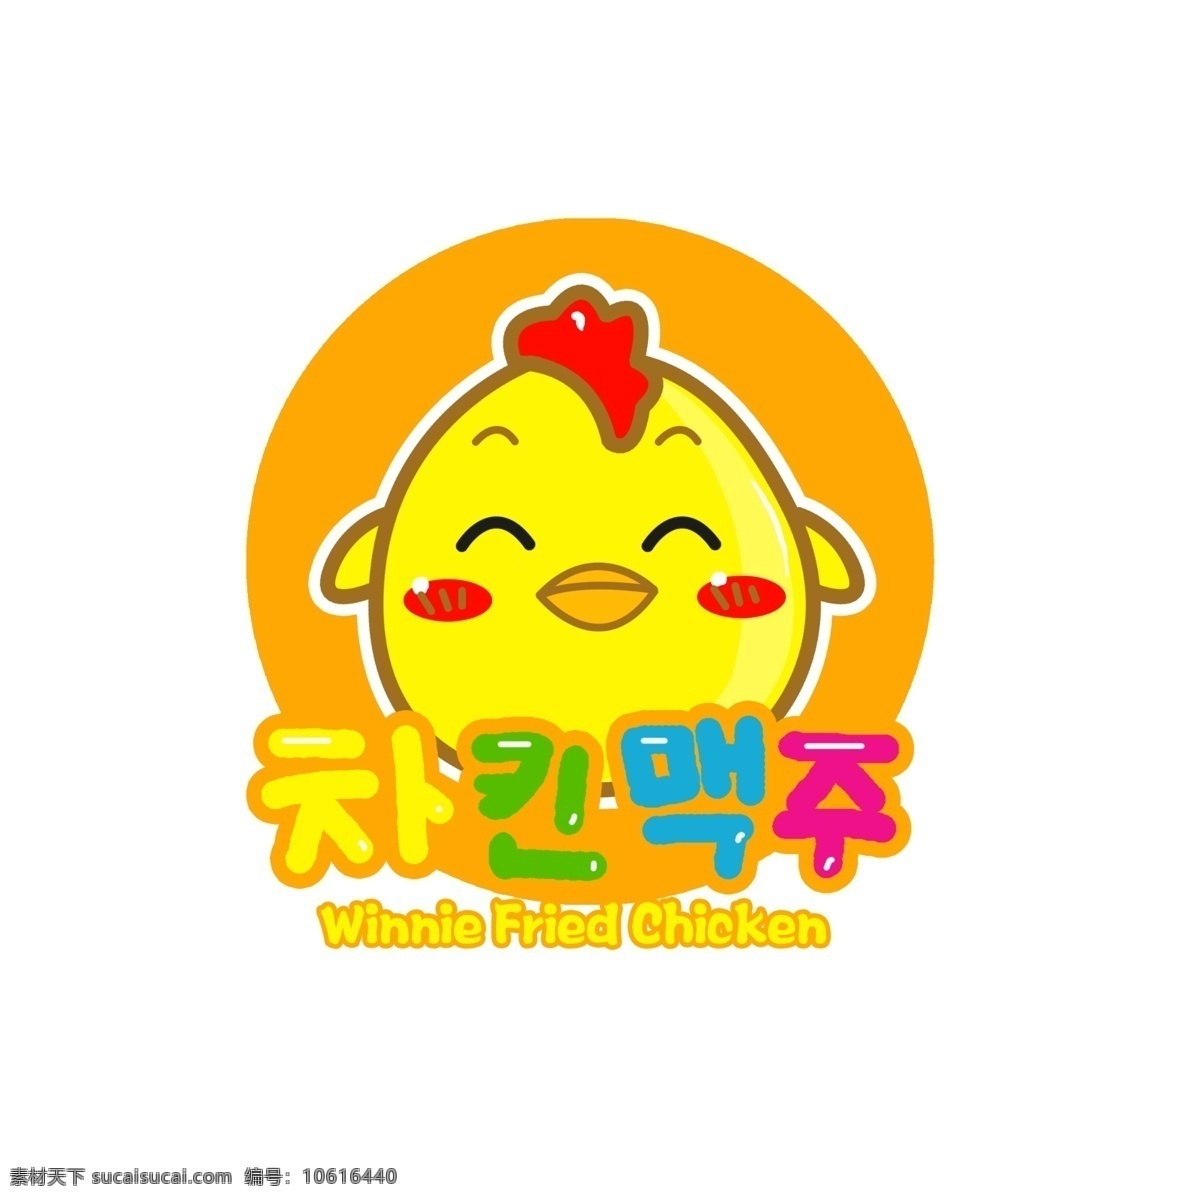 炸鸡logo 维尼 炸鸡 logo 韩国炸鸡 标志psd 标志图标 企业 标志